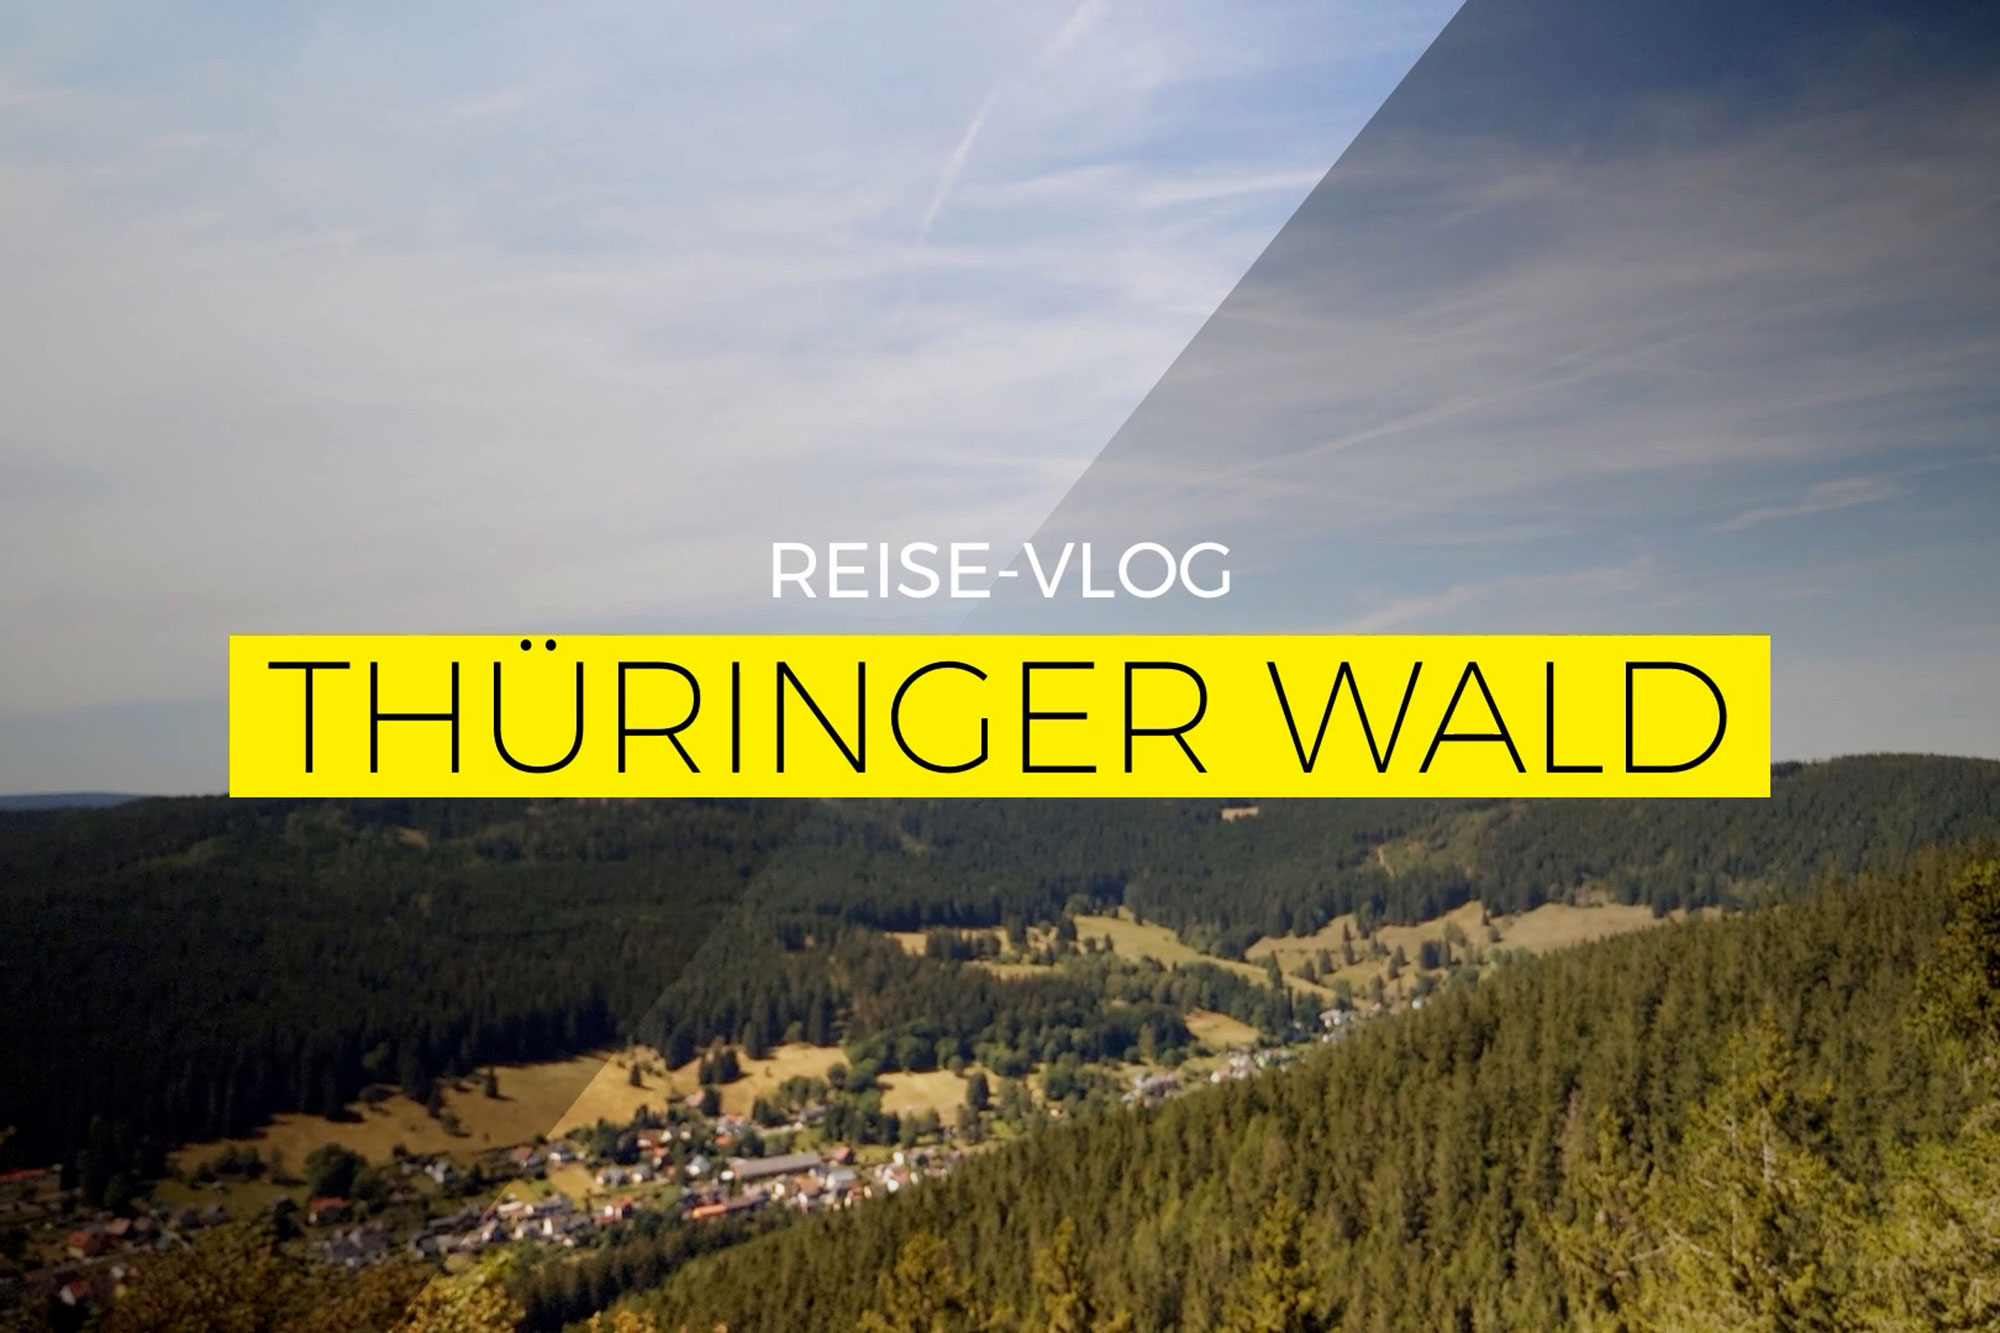 Reise-Vlog: Thüringer Wald